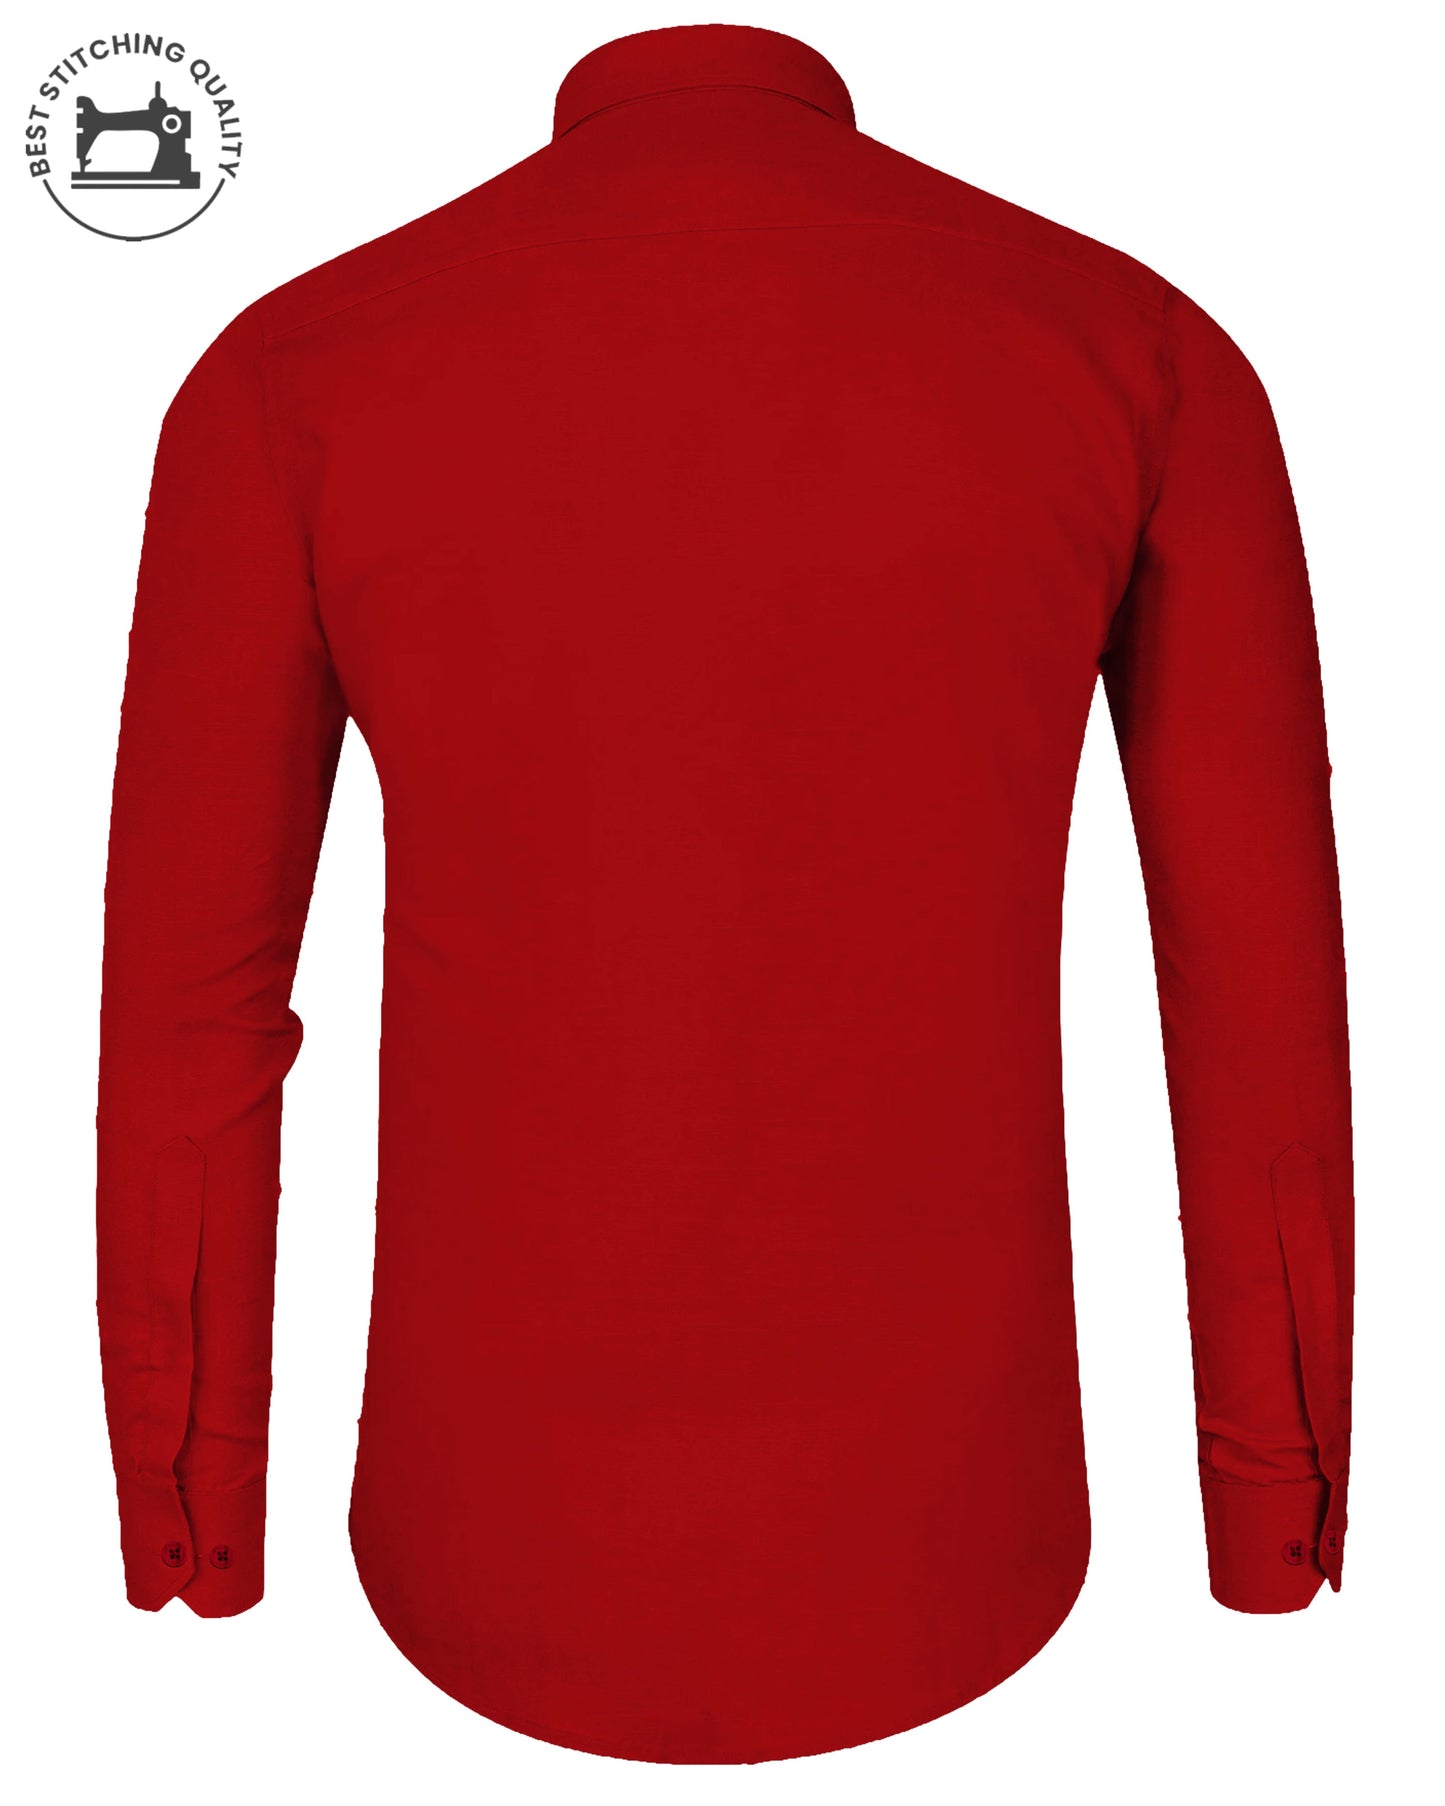 Blood Red I Red Color I Formal Shirt I Regular Fit I 100% Cotton Shirt